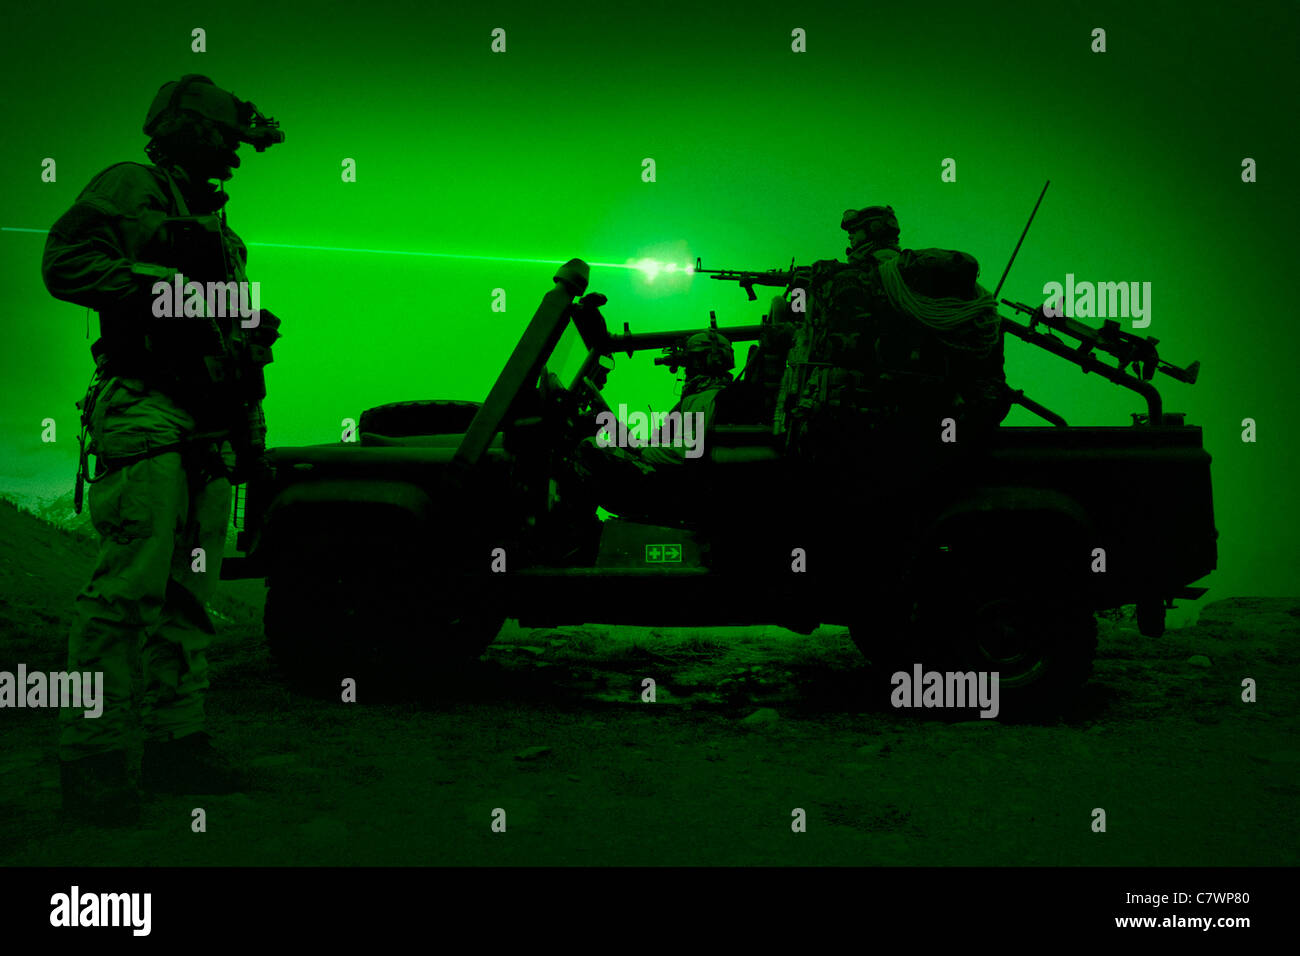 La vision de nuit vue de forces spéciales américaines en patrouille dans une opération spéciale véhicule. Banque D'Images